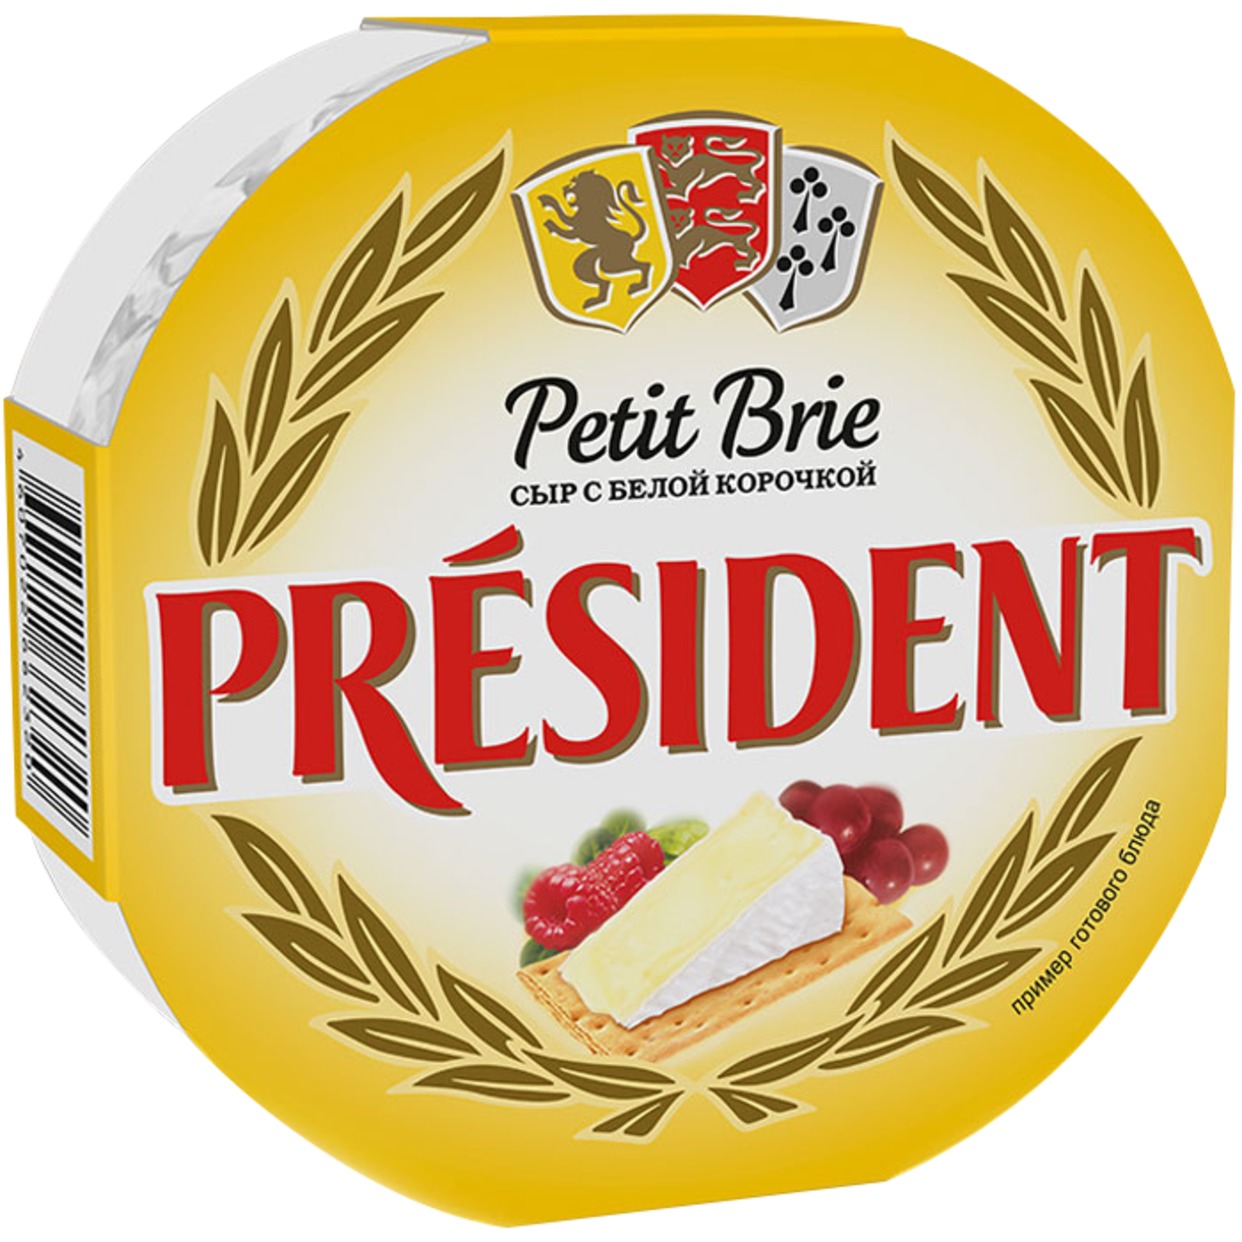 Сыр Petit Brie, мягкий с белой плесенью, President, 125 г по акции в Пятерочке